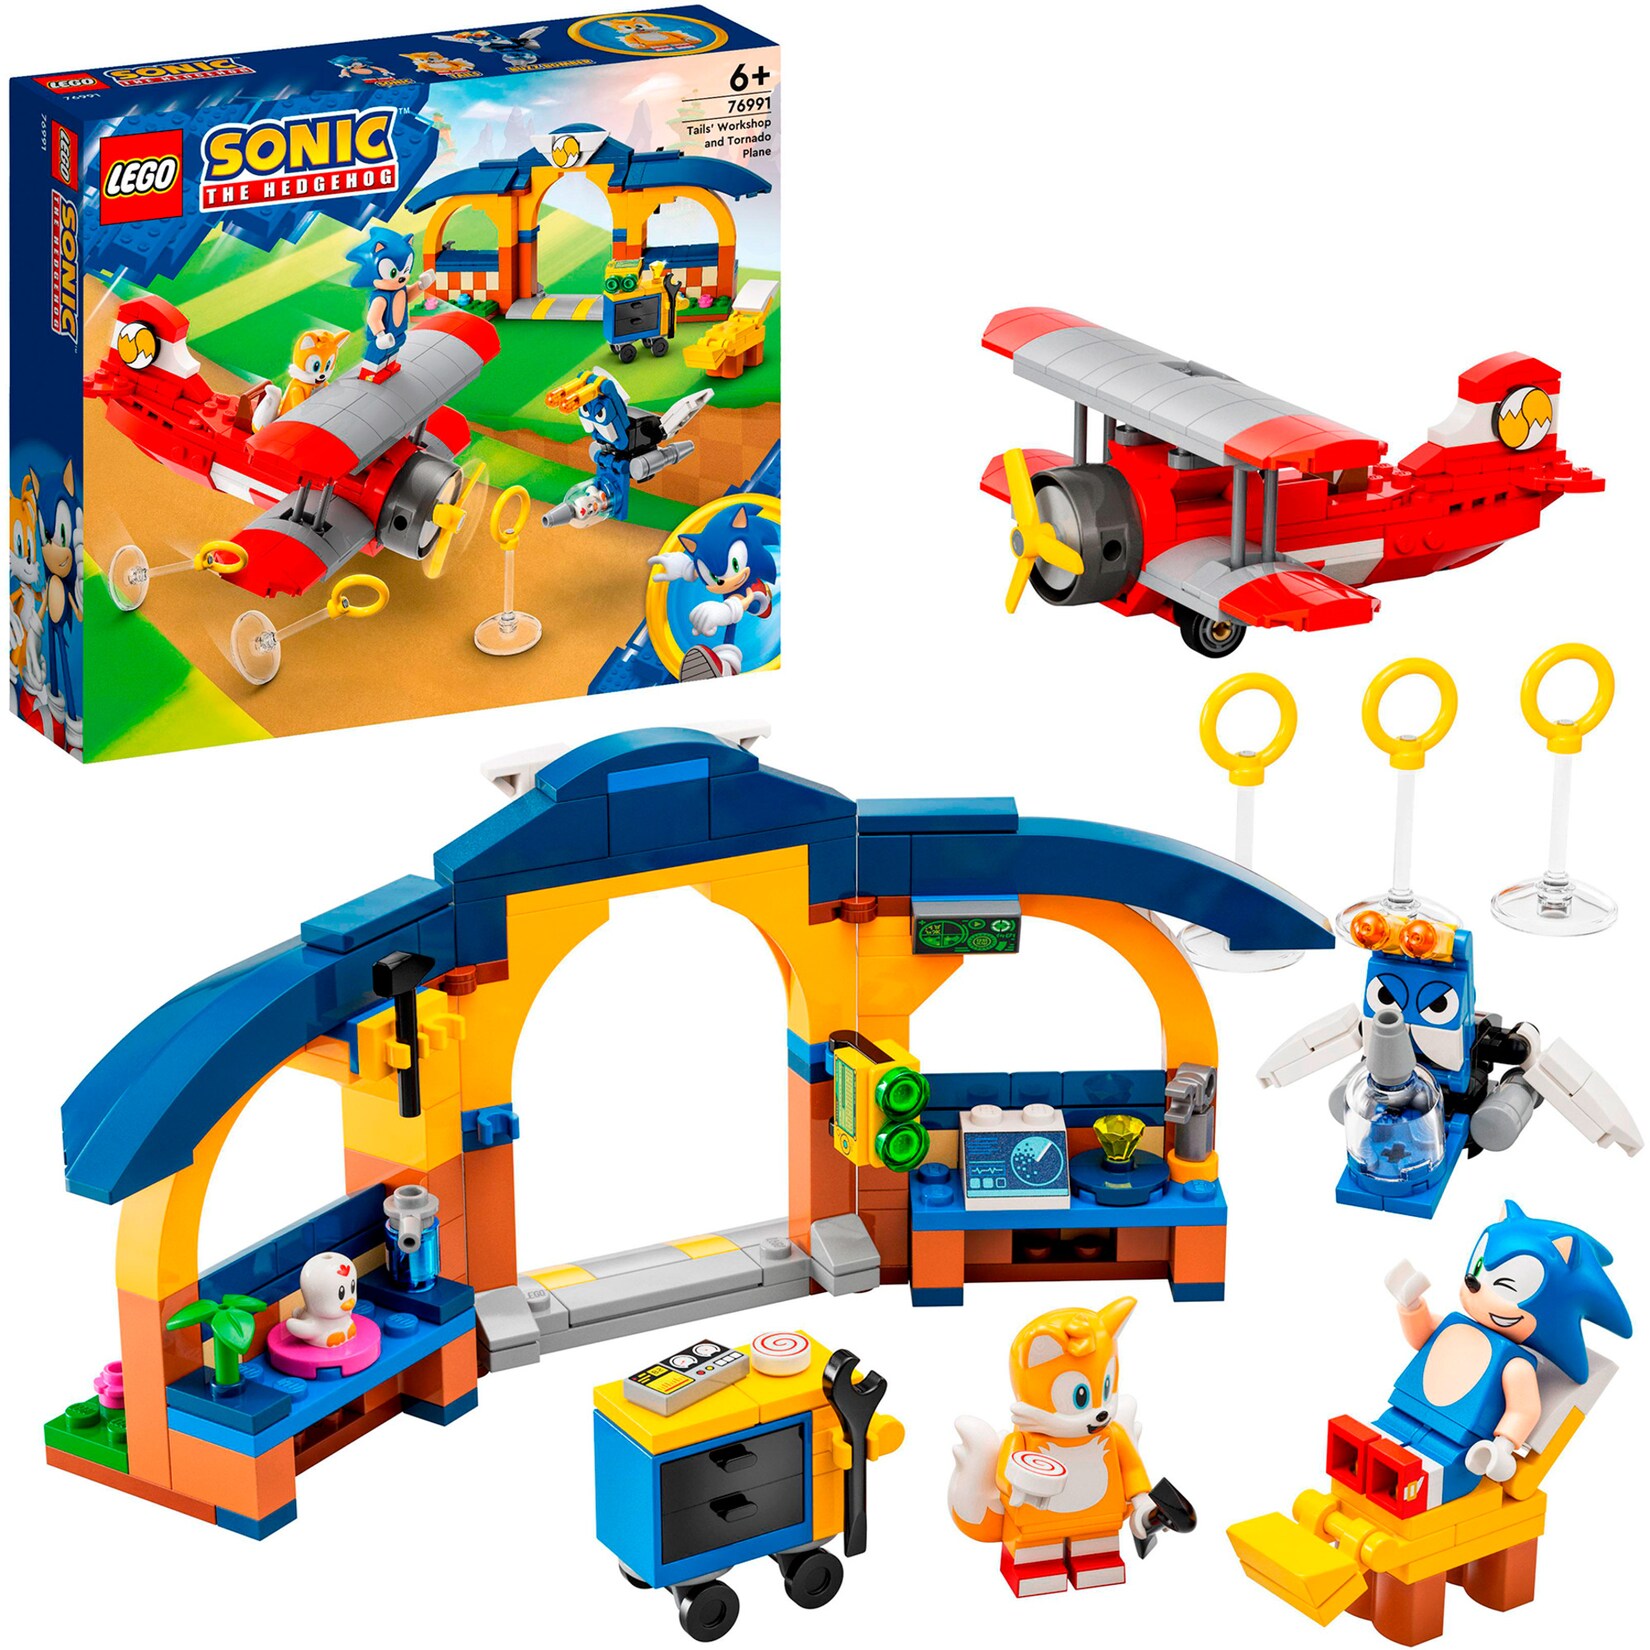 LEGO Konstruktionsspielzeug Sonic the Hedgehog Sonic Tails‘ Tornadoflieger mit Werkstatt